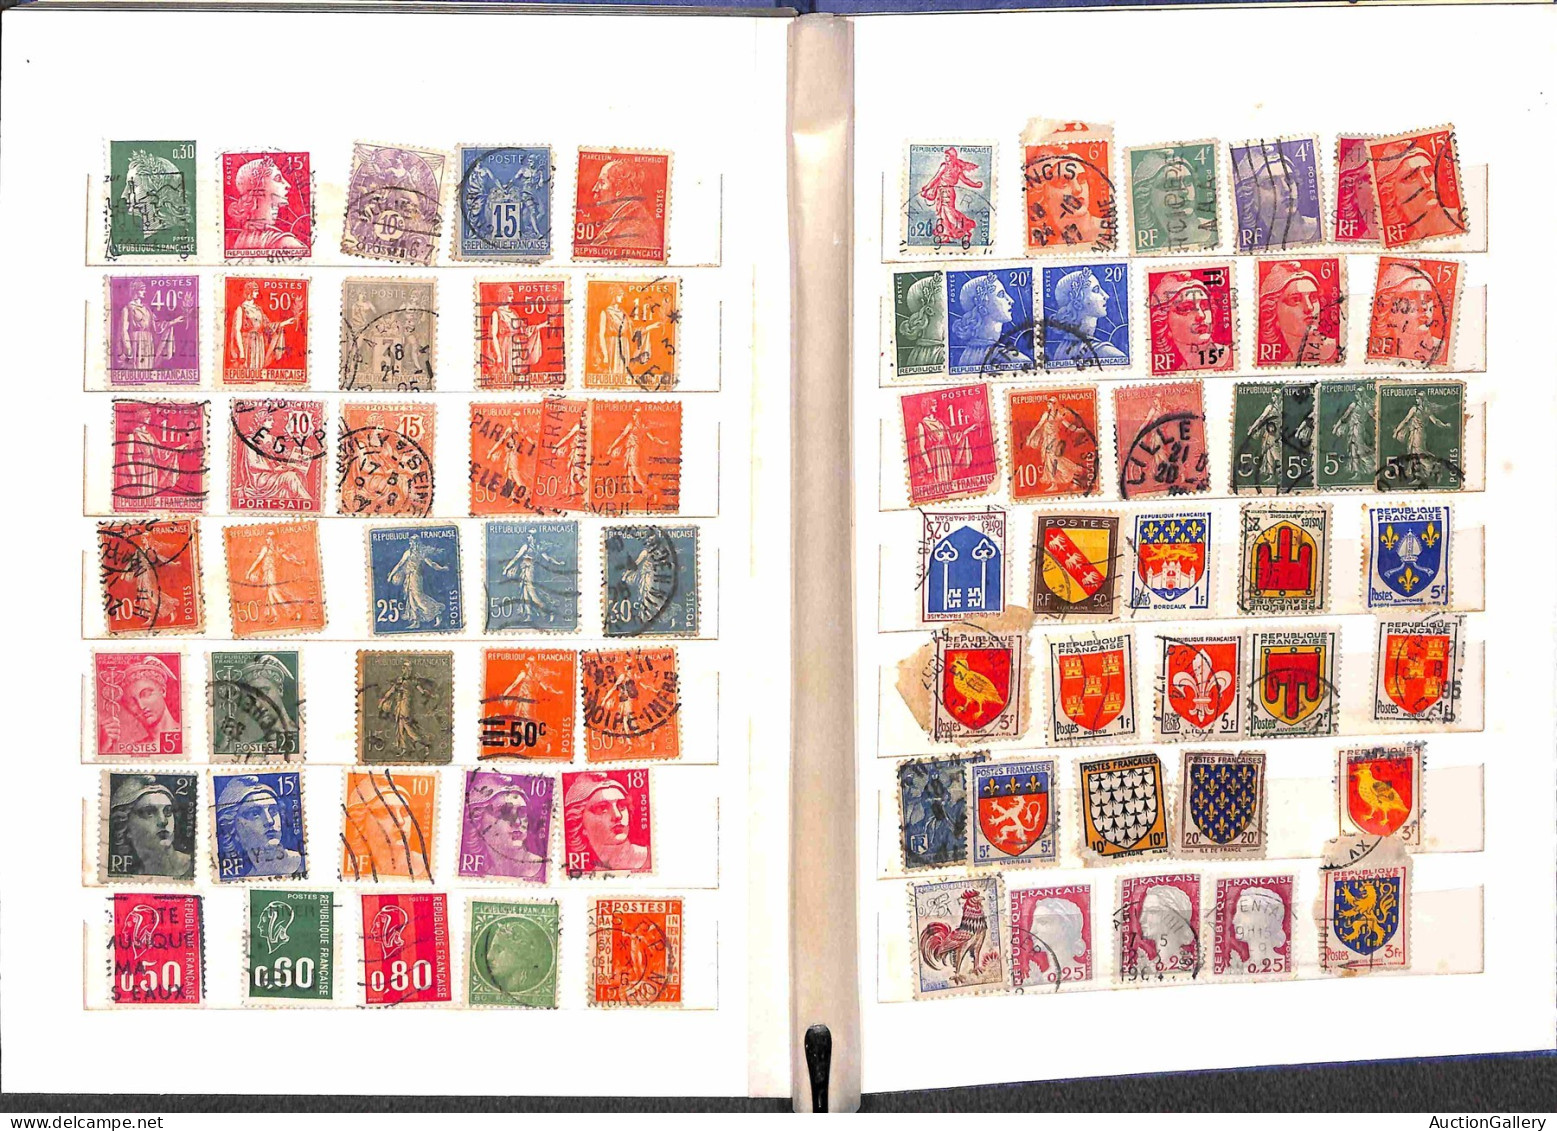 Lotti&Collezioni - Europa&Oltremare - FRANCIA - 1910/1970 circa - Classificatore con oltre 500 francobolli nuovi e usati